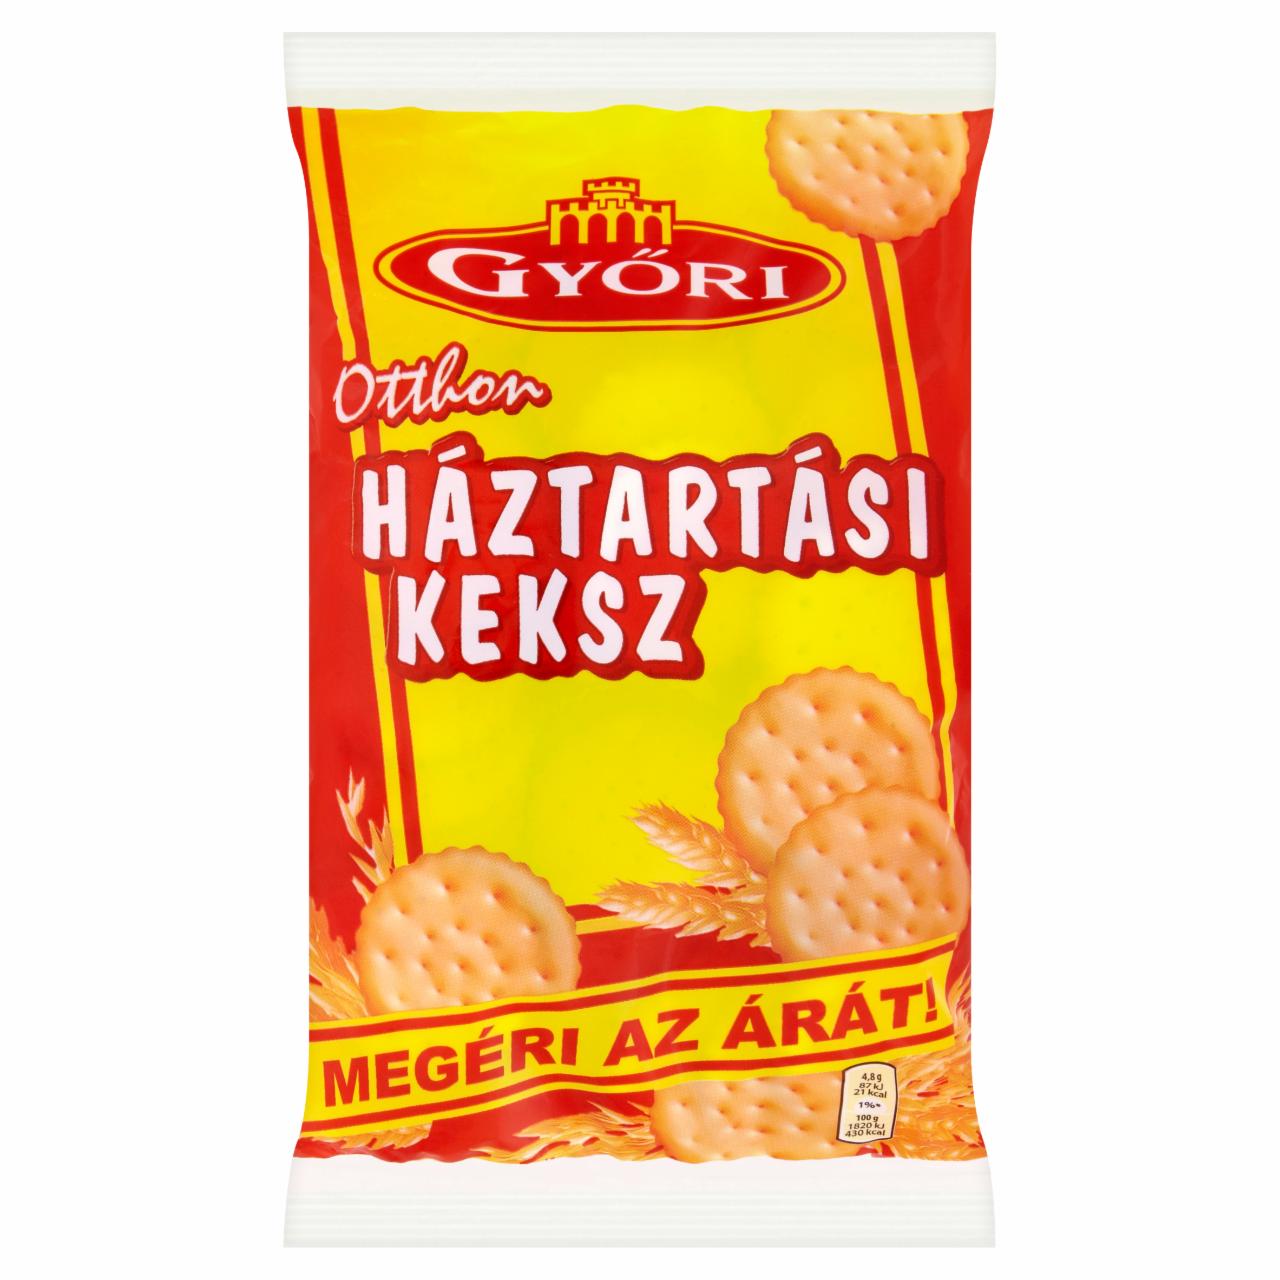 Képek - Otthon háztartási keksz Győri